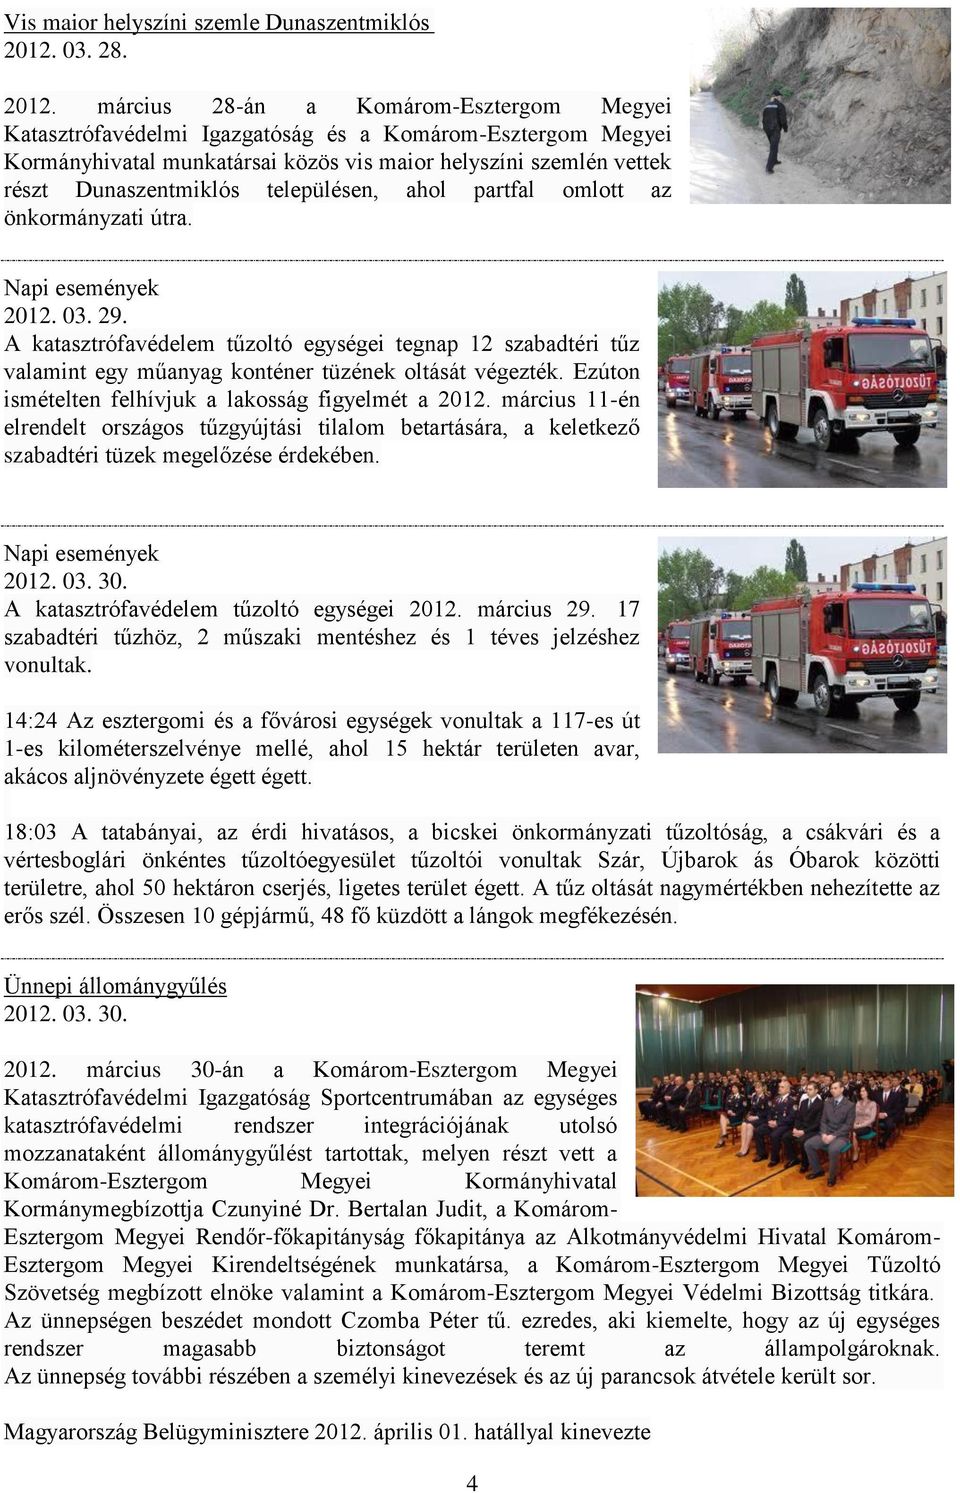 március 28-án a Komárom-Esztergom Megyei Katasztrófavédelmi Igazgatóság és a Komárom-Esztergom Megyei Kormányhivatal munkatársai közös vis maior helyszíni szemlén vettek részt Dunaszentmiklós